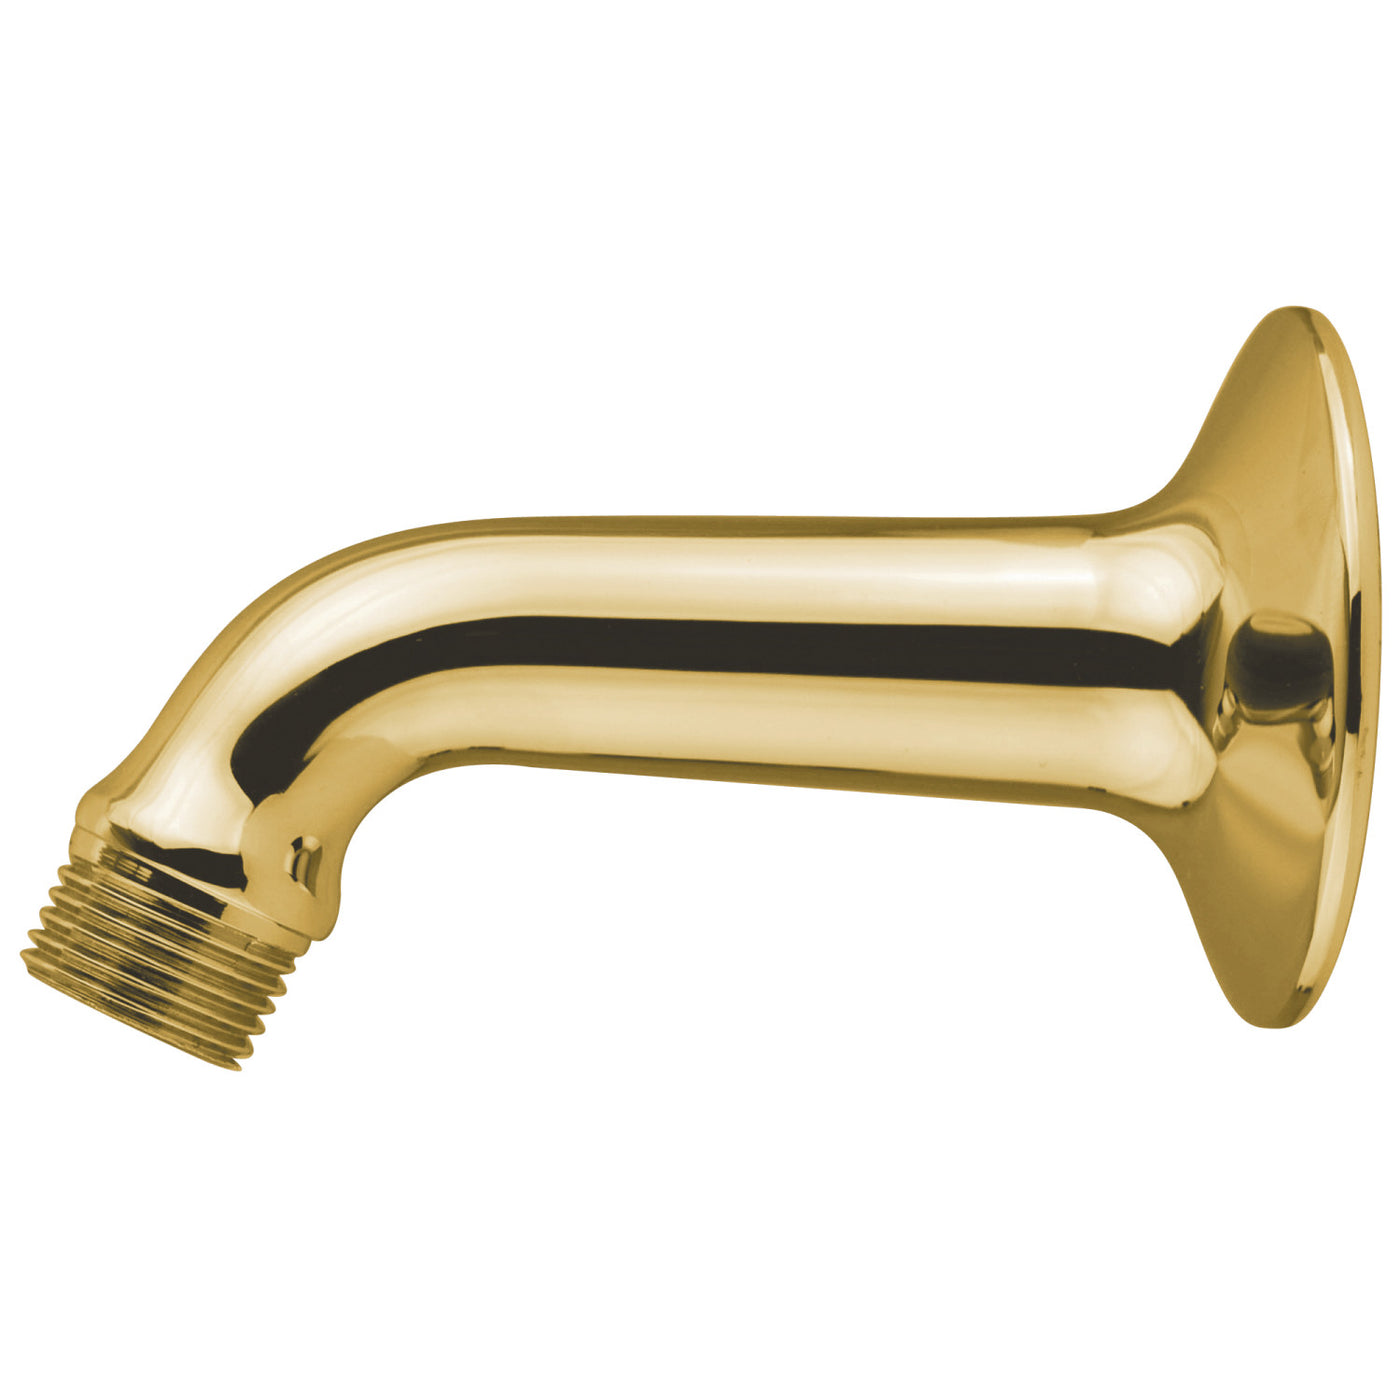 Elements of Design DK150C2 6-Inch Shower Arm, Polished Brass